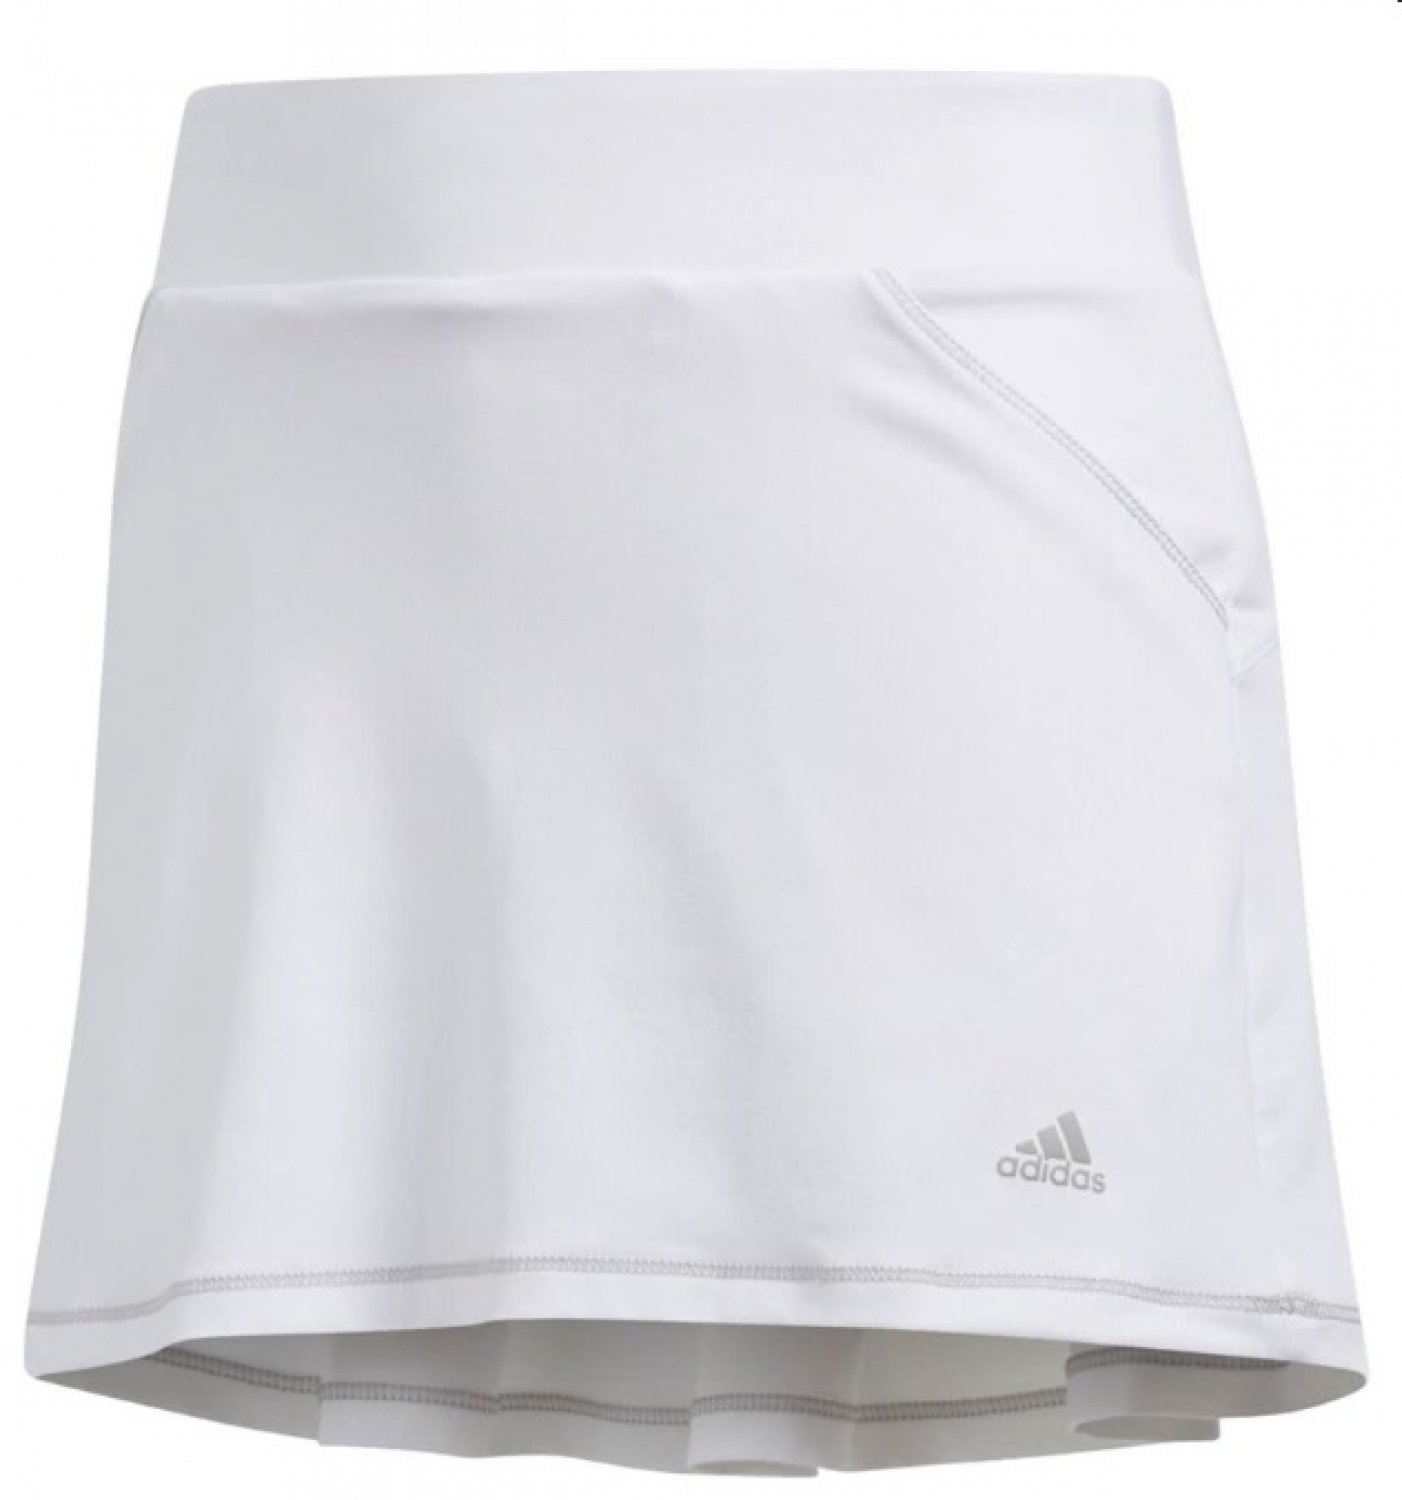 Saia/Vestido Adidas Solid Pleat Girls Skort White 9-10Y